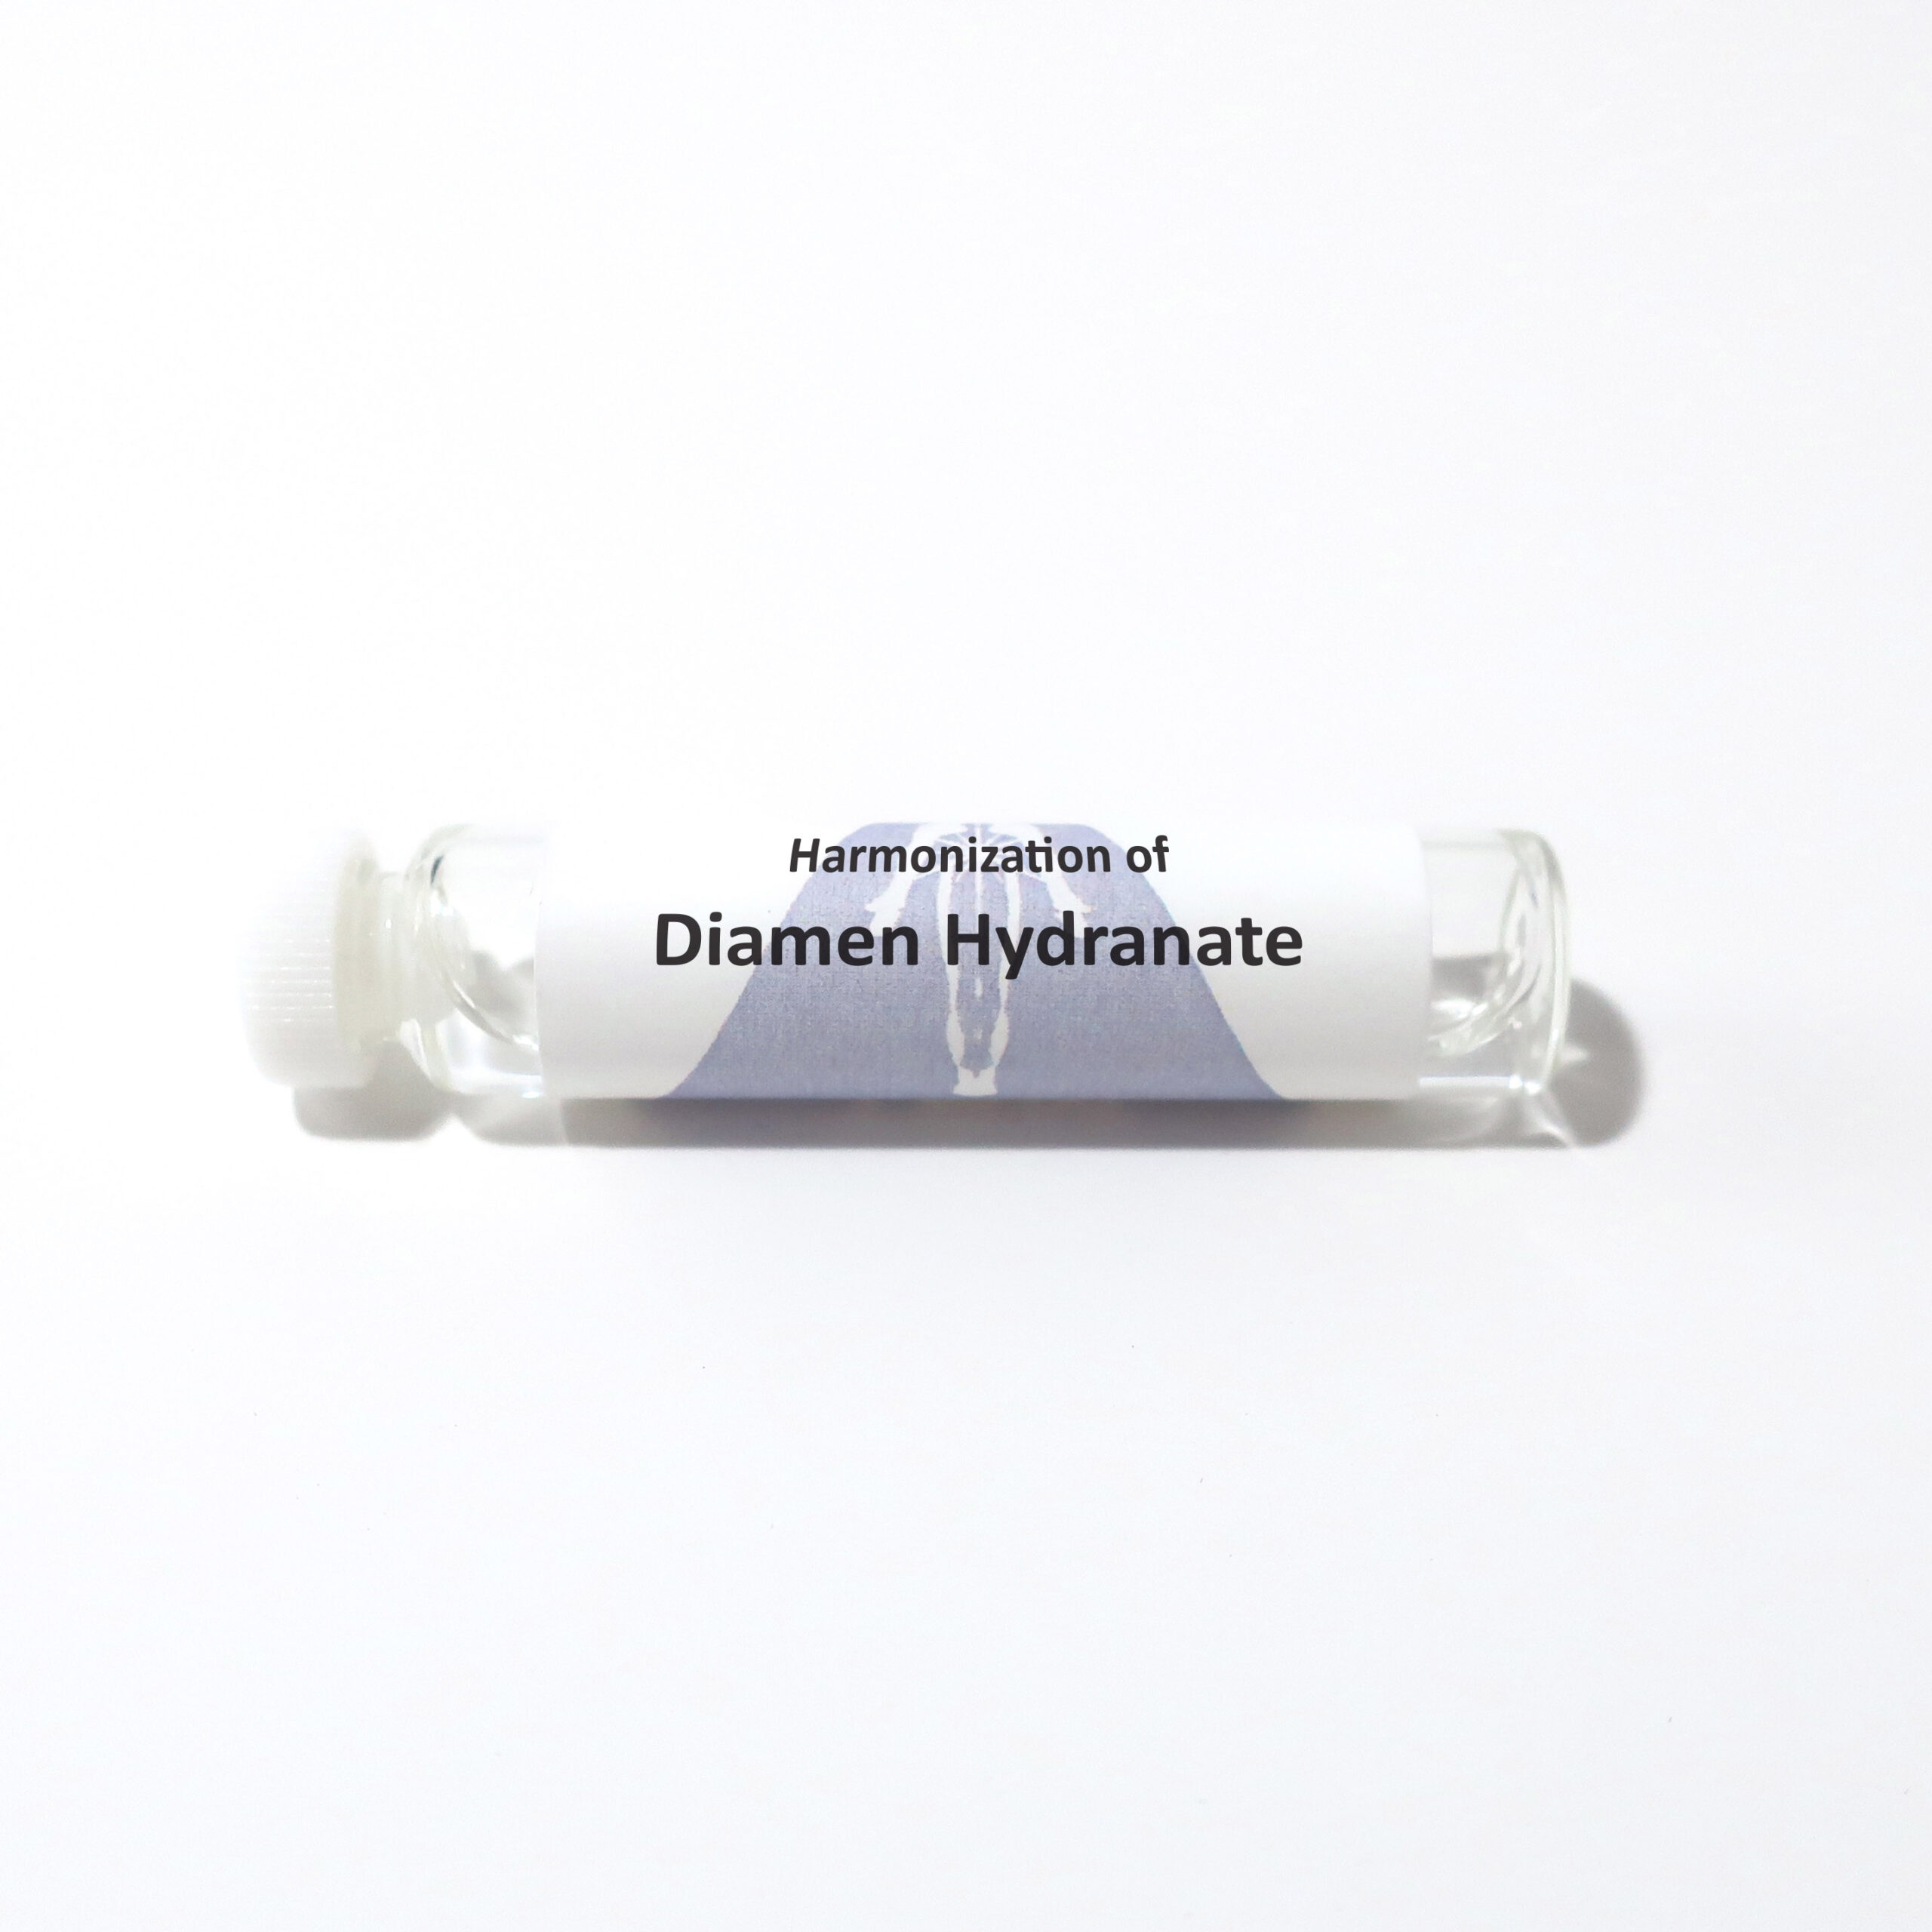 Diamen Hydranate